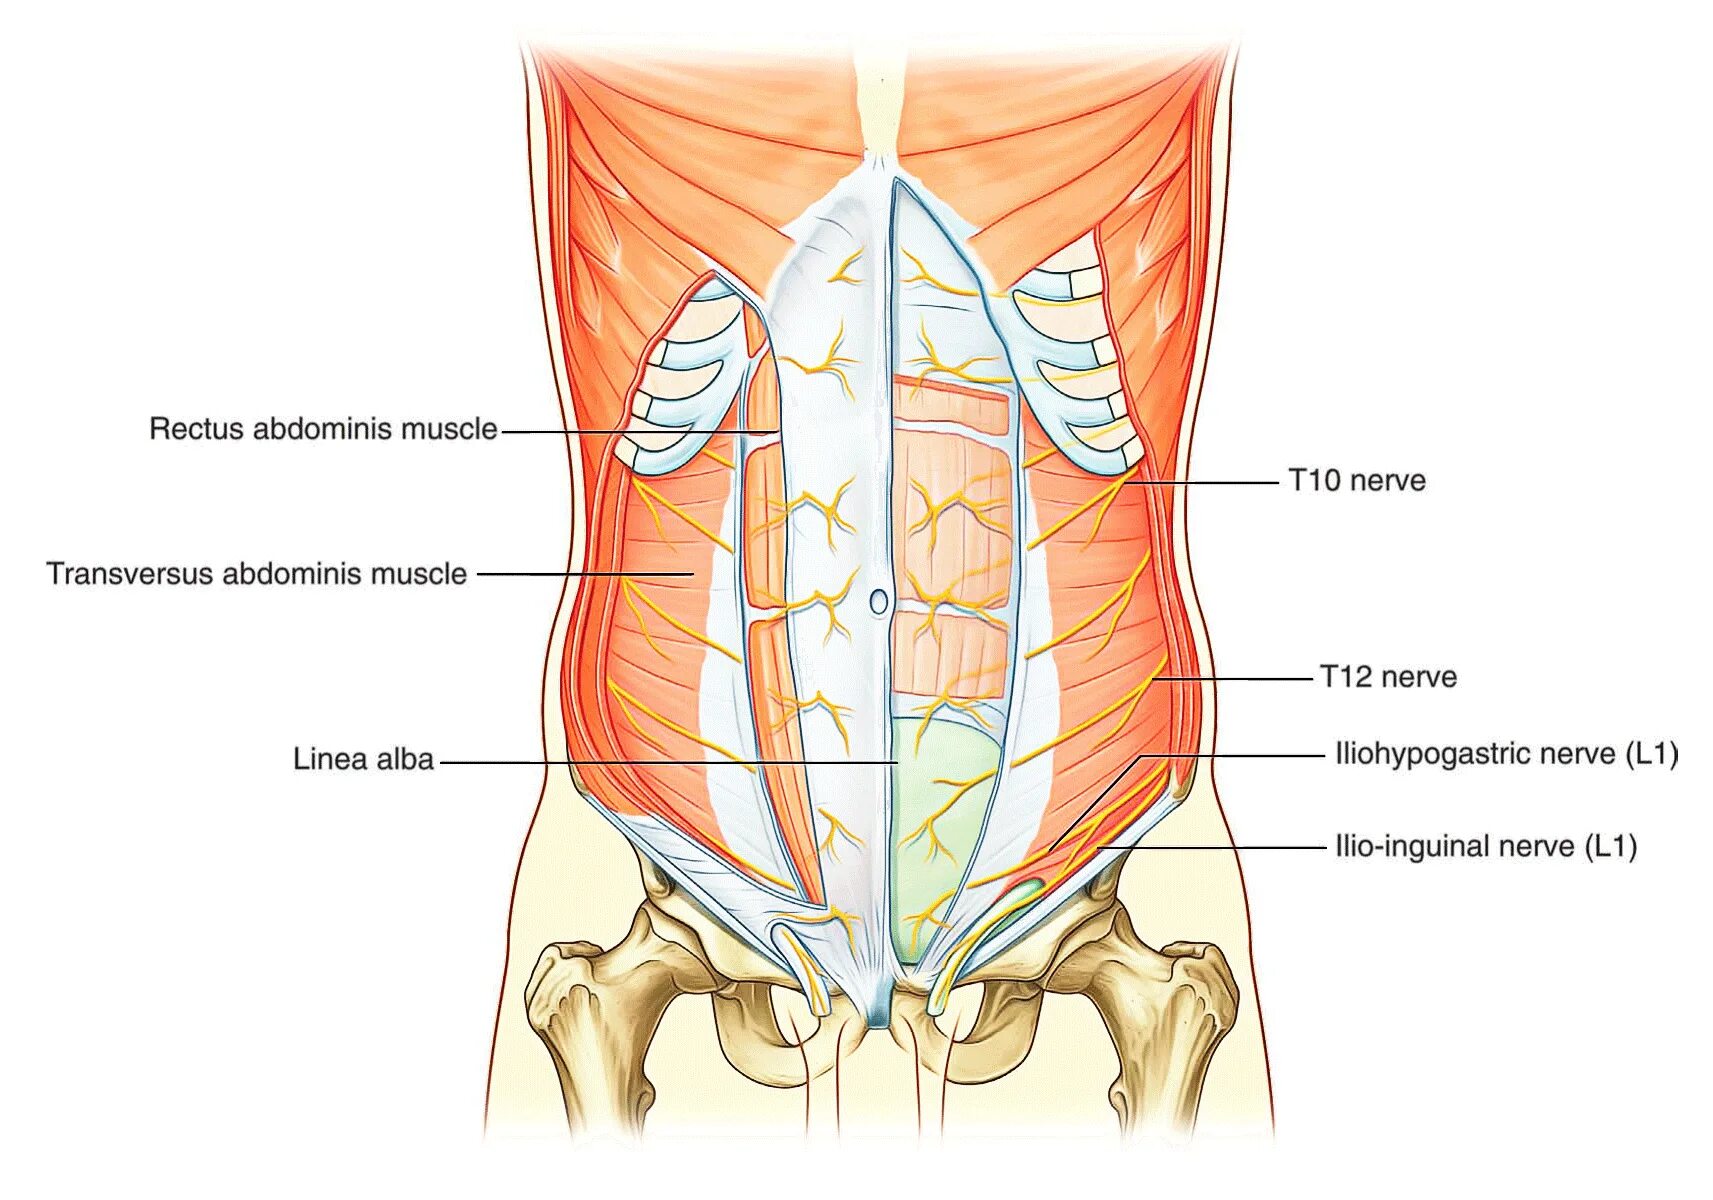 Области на поверхности живота. Передняя брюшная стенка иннервация. M transversus abdominis начало. Прямая мышца живота иннервация. Иннервация передней брюшной стенки.